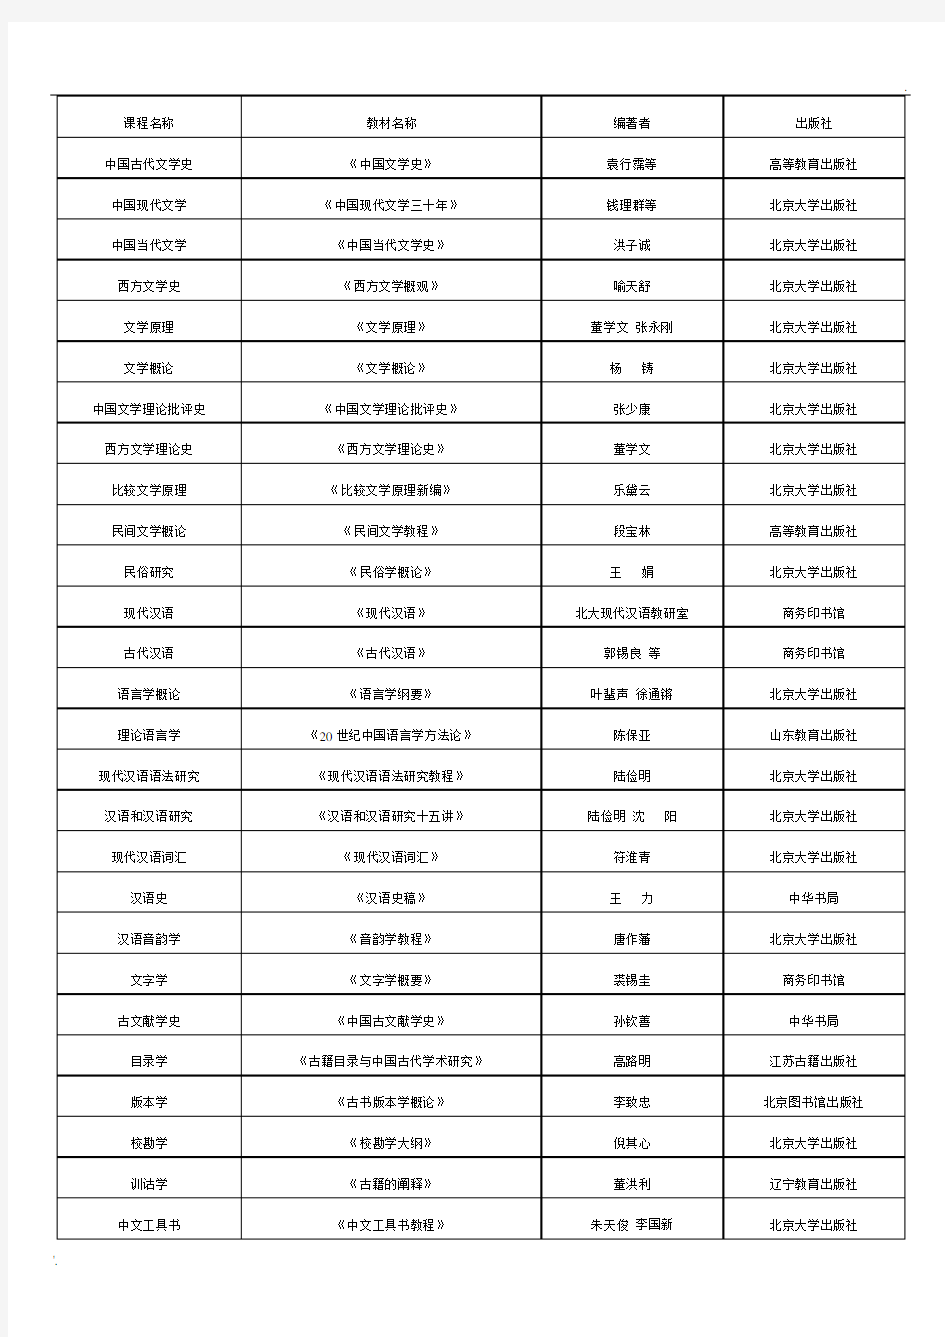 北京大学中文系基础课程所用教材一览表